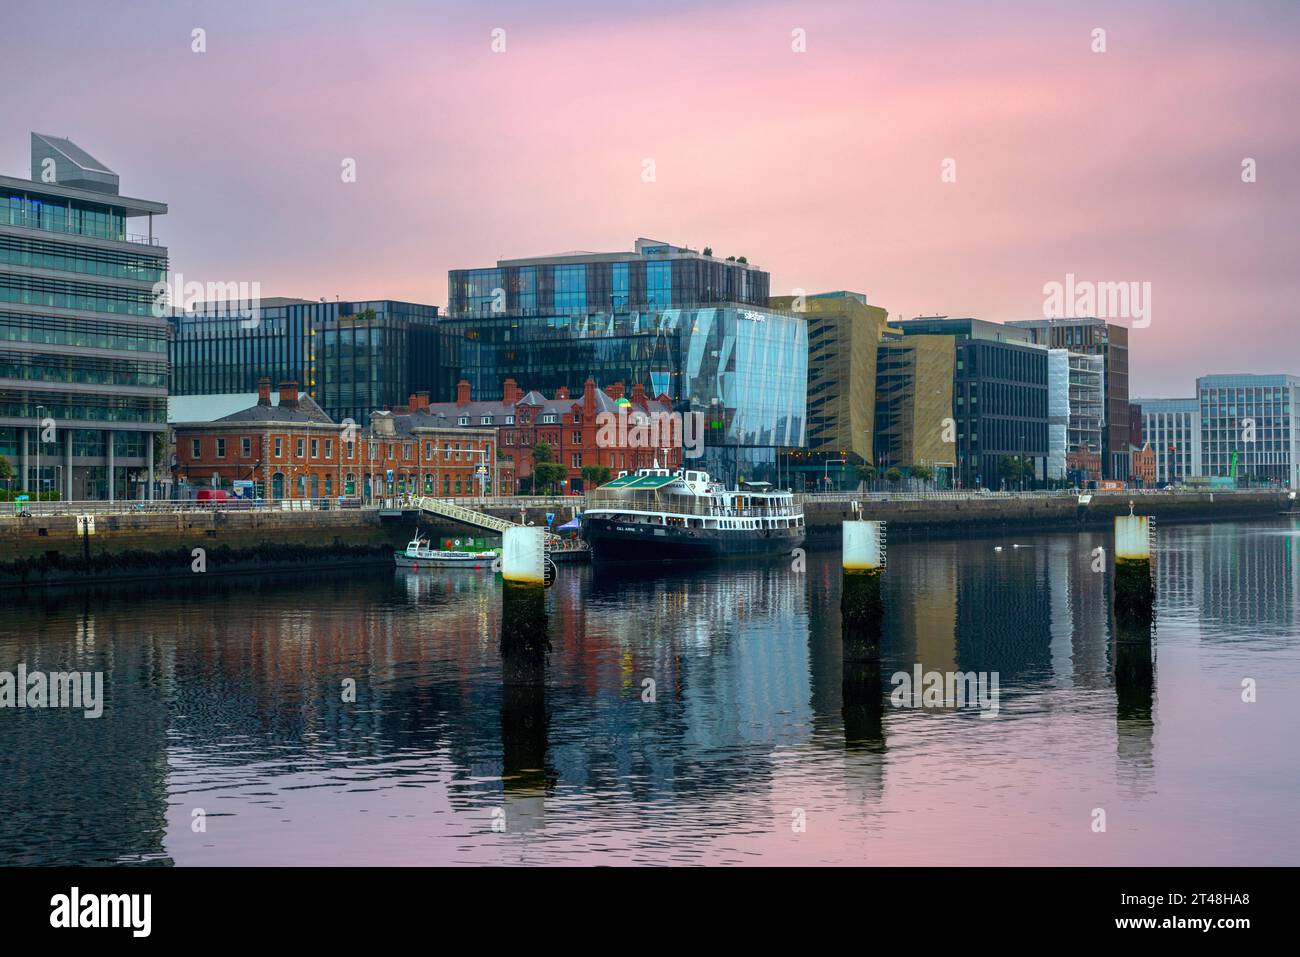 Dublin Docklands è un'area urbana vivace e in rapido sviluppo con architettura moderna e aziende innovative. Foto Stock